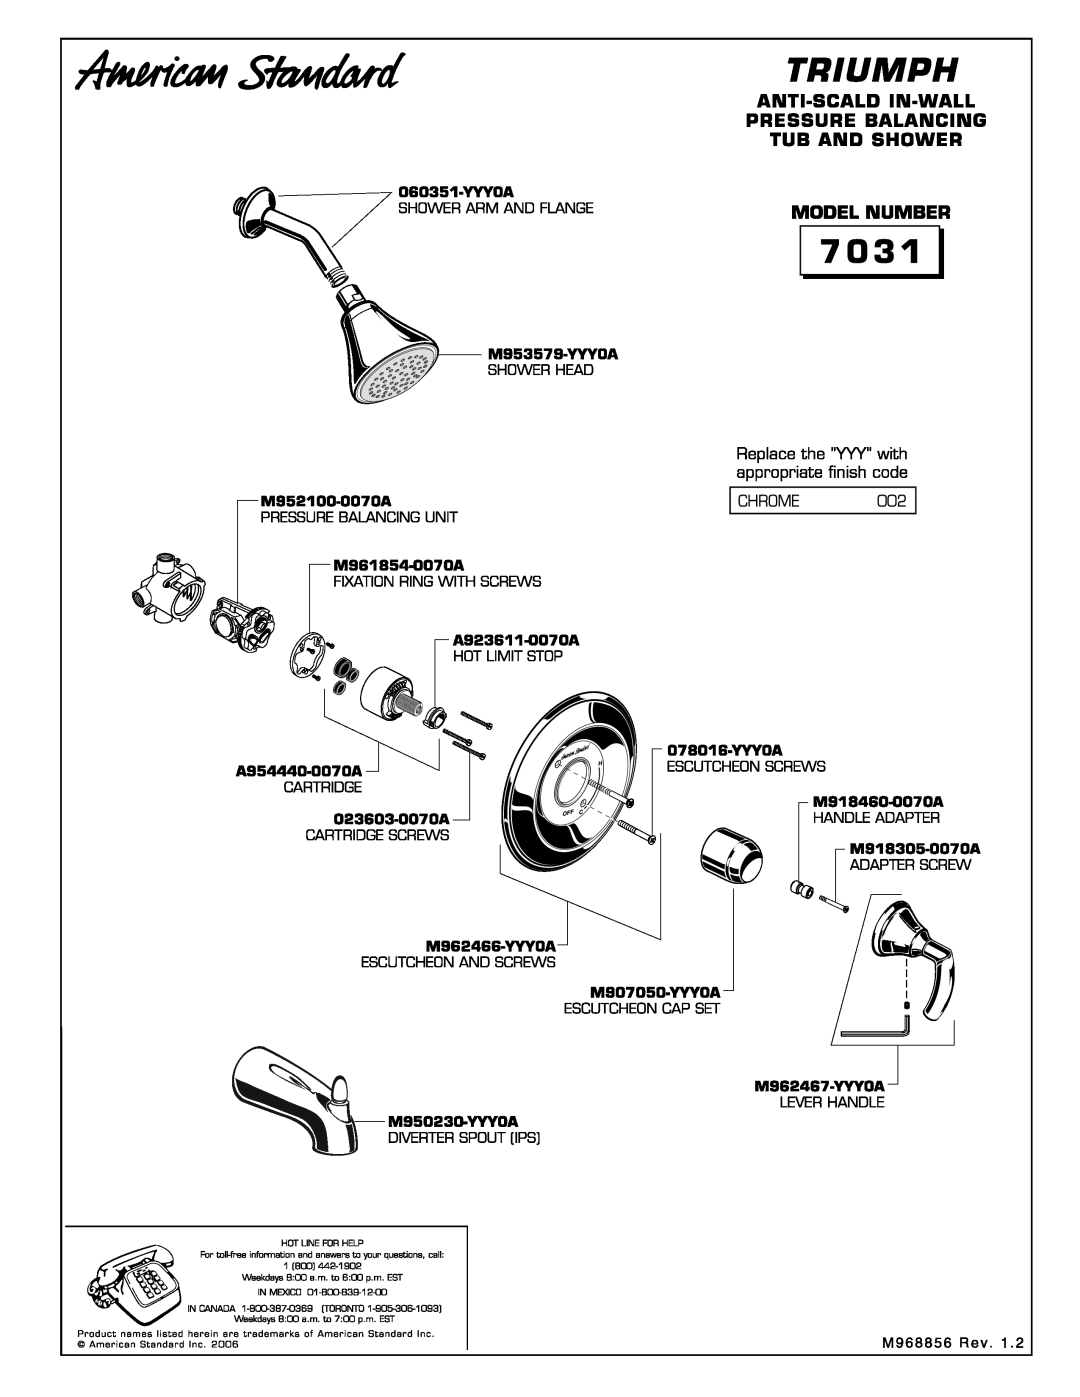 American Standard 7031 manual 